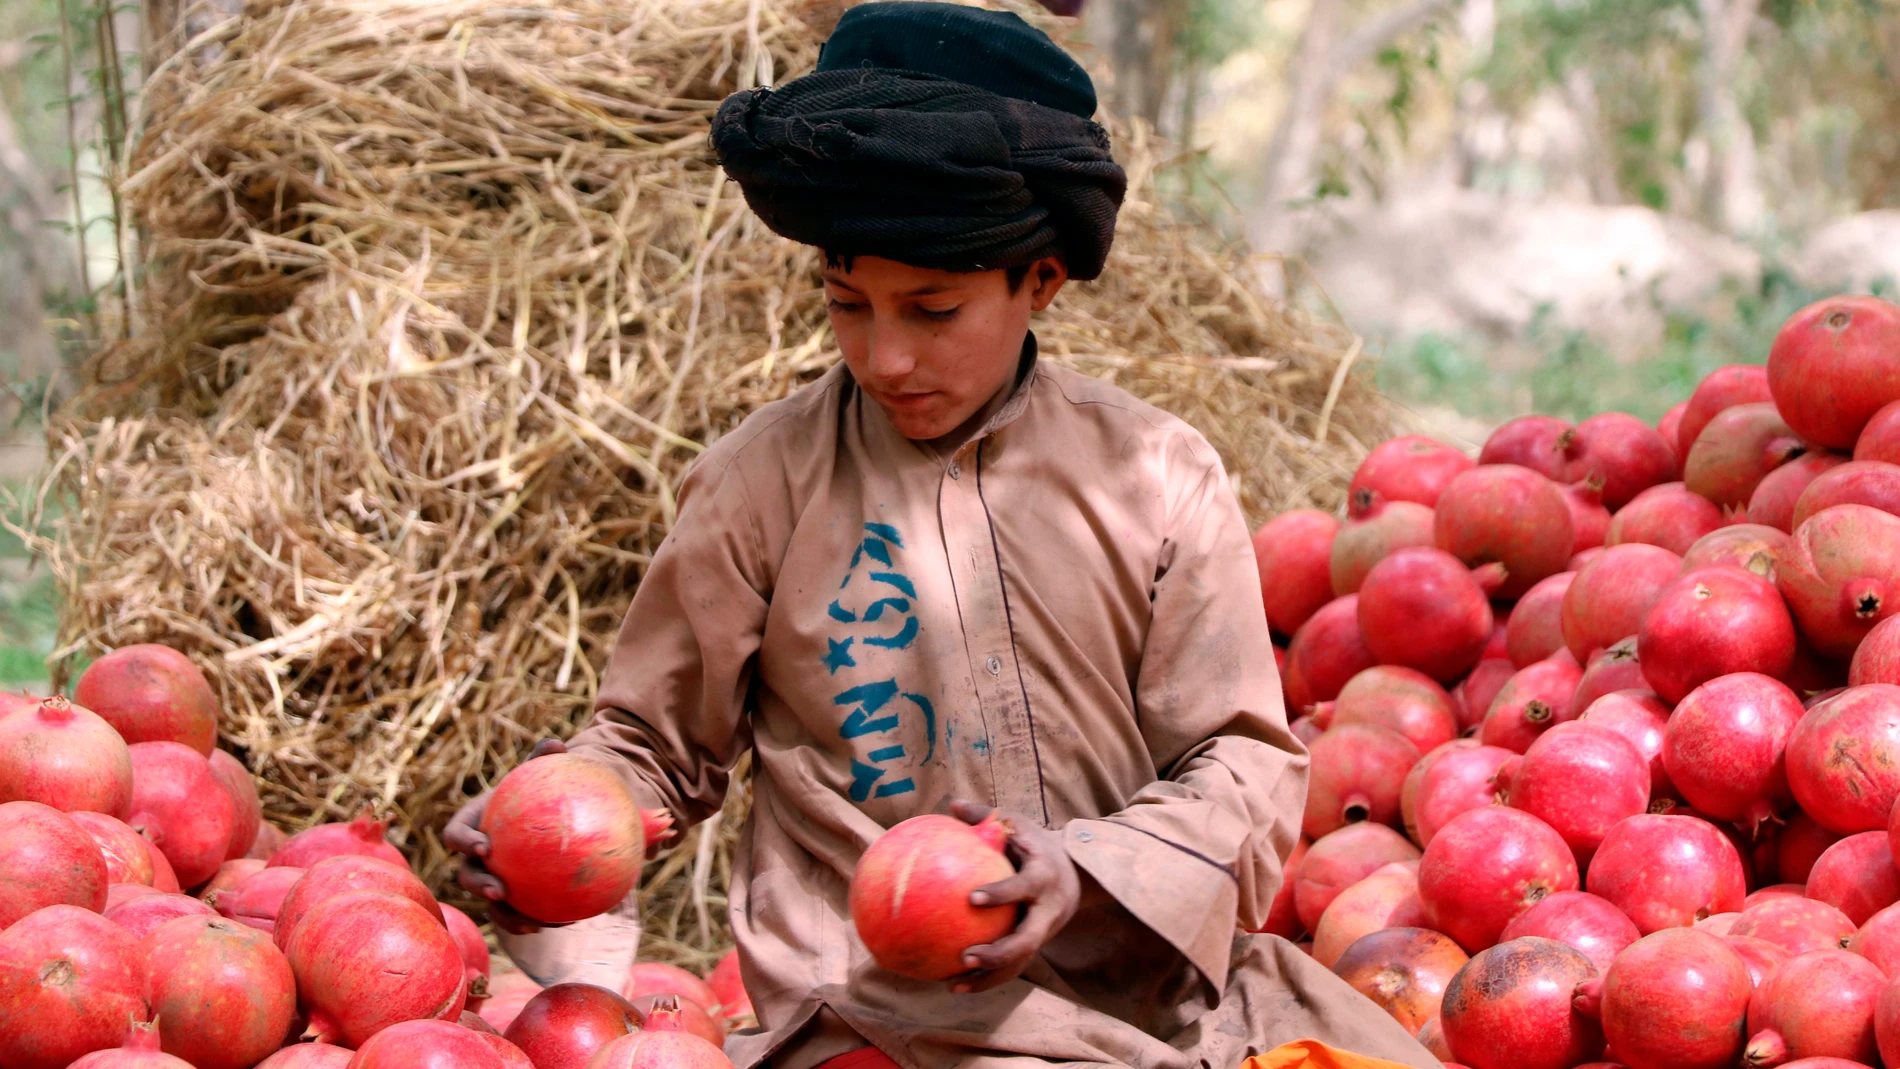 Un informe de la ONU establece que 23 millones de personas afganas, más de la mitad de la población de Afganistán se enfrentará a una inseguridad alimentaria a partir de noviembre.